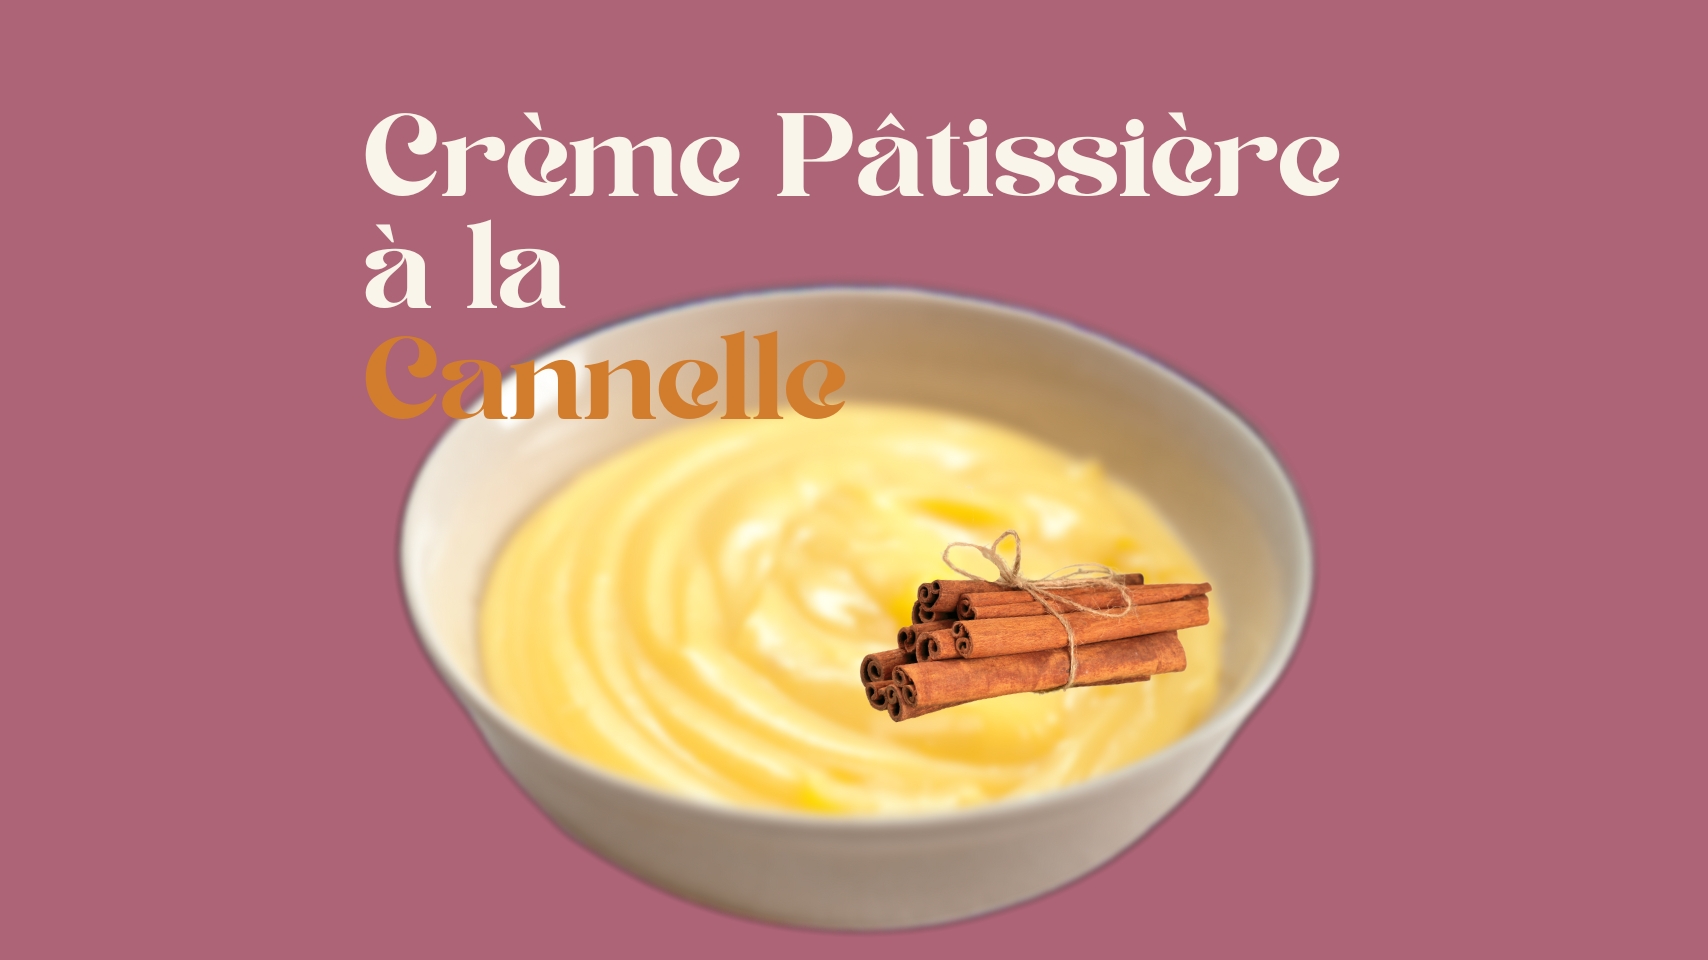 Crème Pâtissière à la Cannelle - Crème Pâtissière